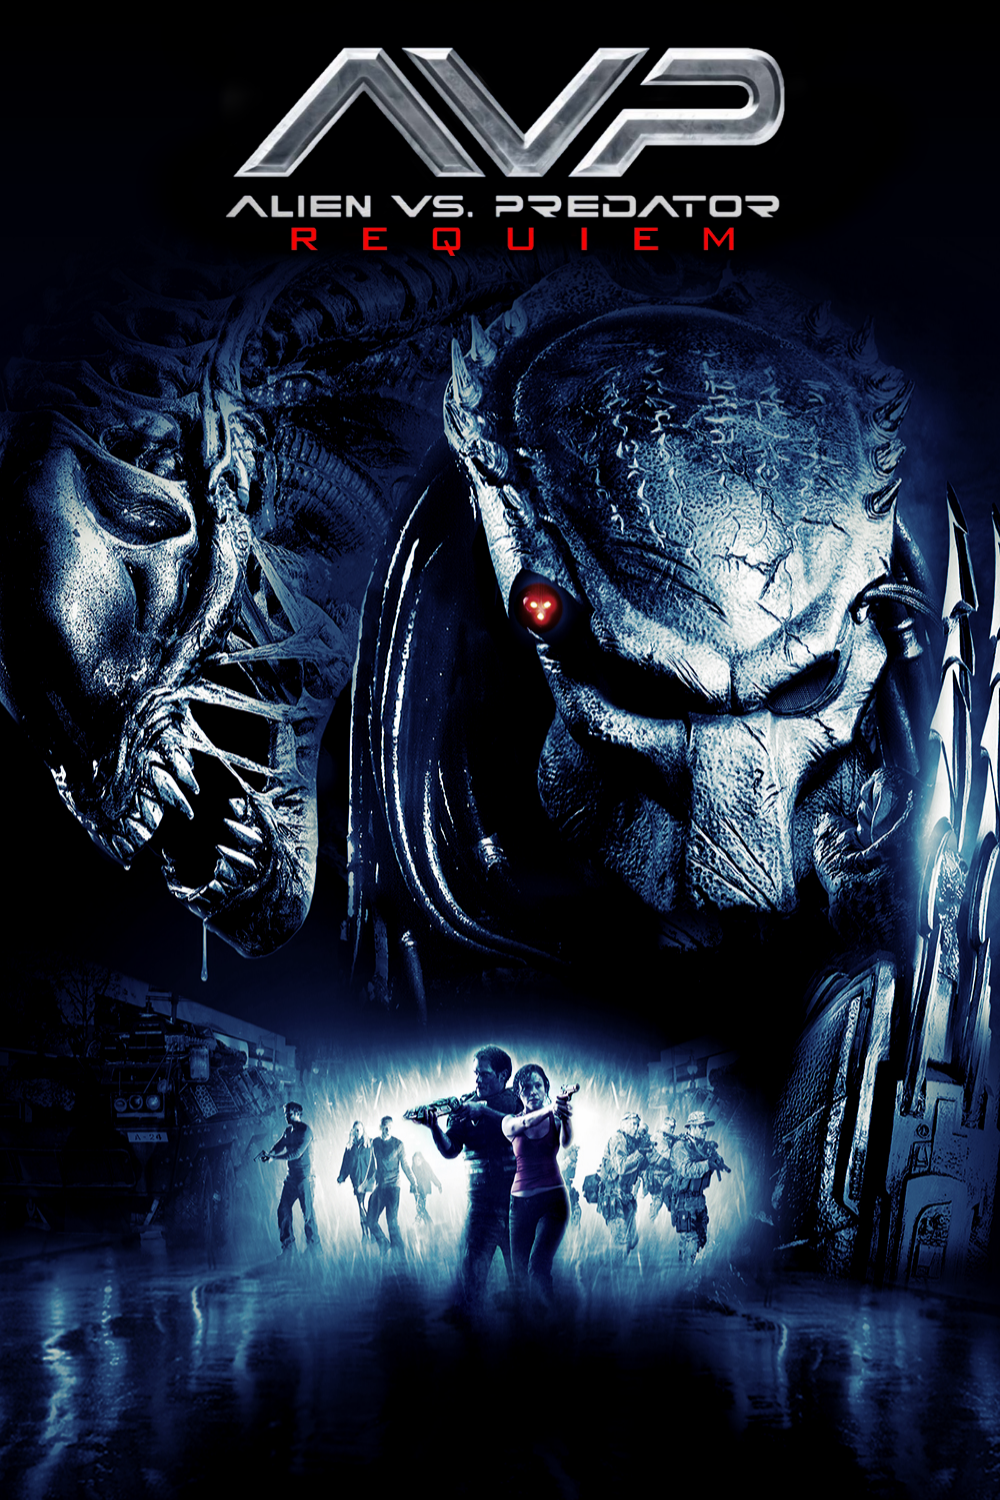 AVPR: Aliens vs Predator - Requiem (2007)